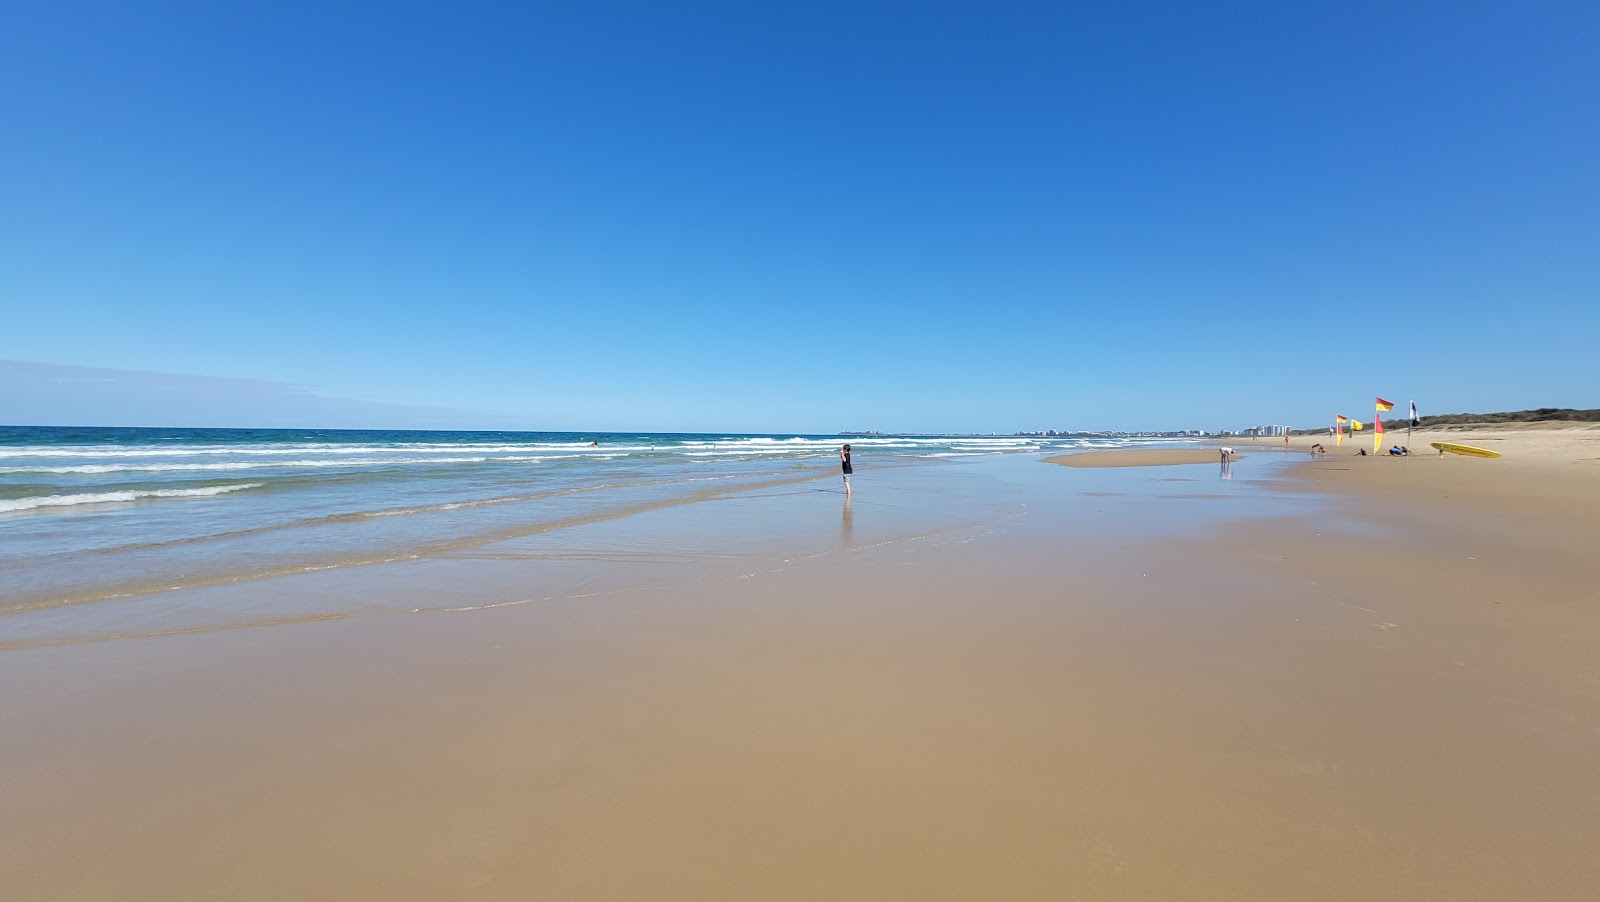 Mudjimba Dog Beach'in fotoğrafı parlak kum yüzey ile